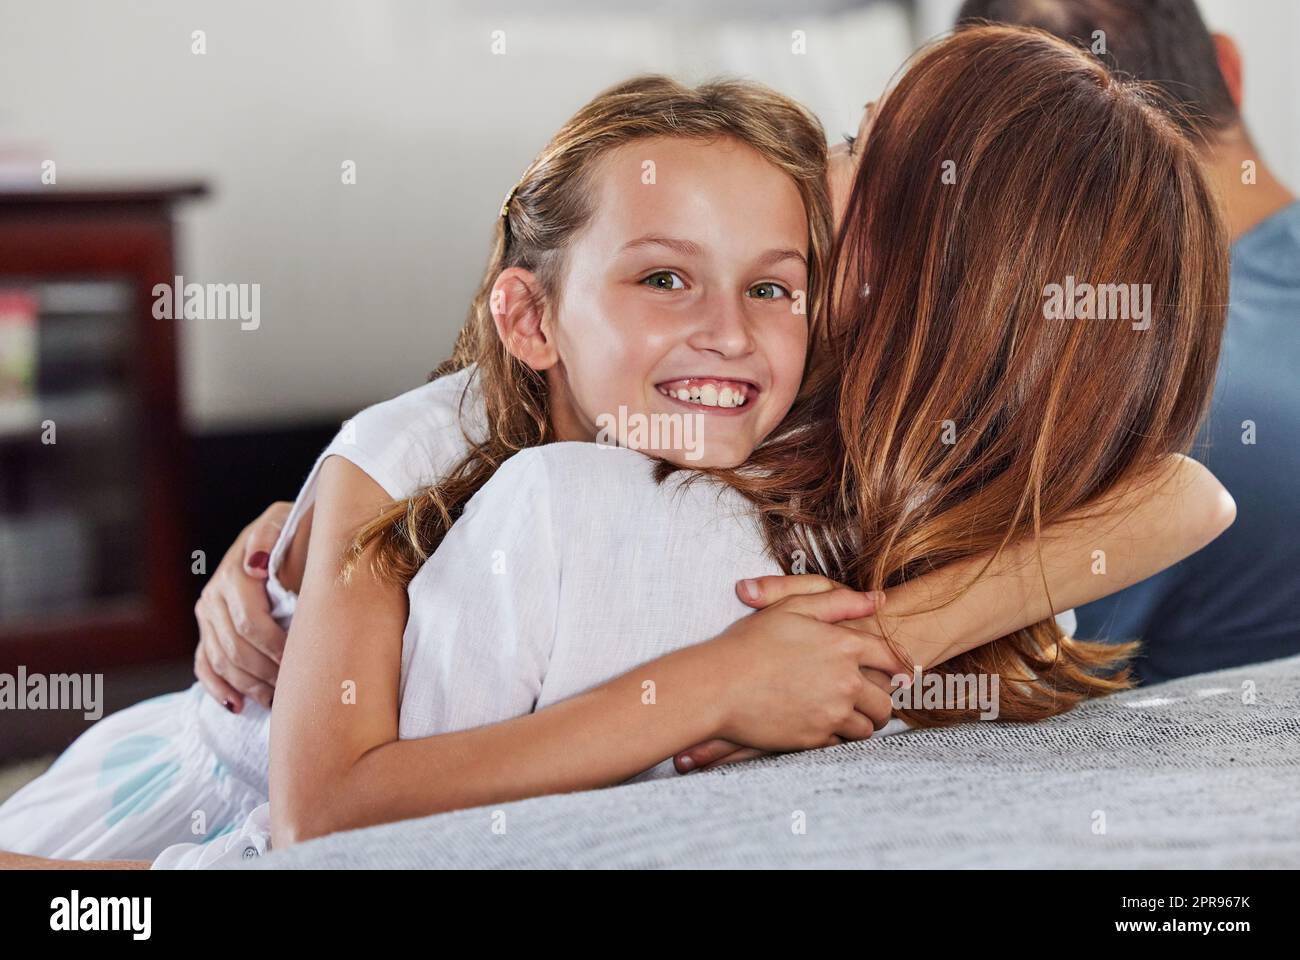 Im una ragazza di mummys per sicuro. Una ragazza piccola adorabile che abbraccia la sua mamma durante un giorno nel paese. Foto Stock